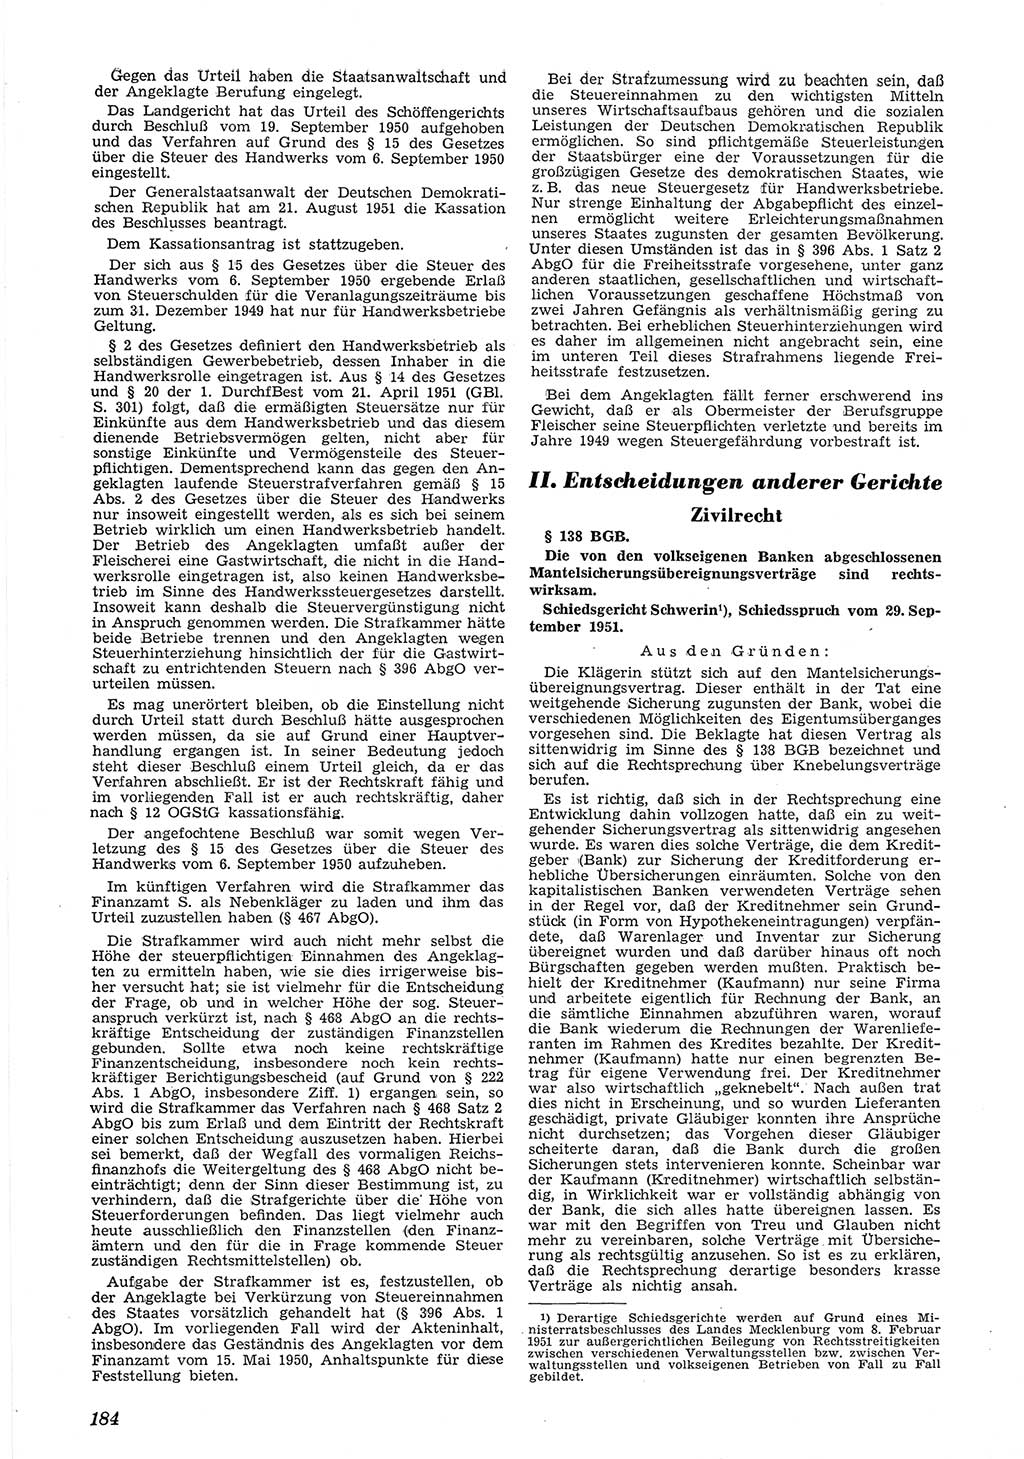 Neue Justiz (NJ), Zeitschrift für Recht und Rechtswissenschaft [Deutsche Demokratische Republik (DDR)], 6. Jahrgang 1952, Seite 184 (NJ DDR 1952, S. 184)